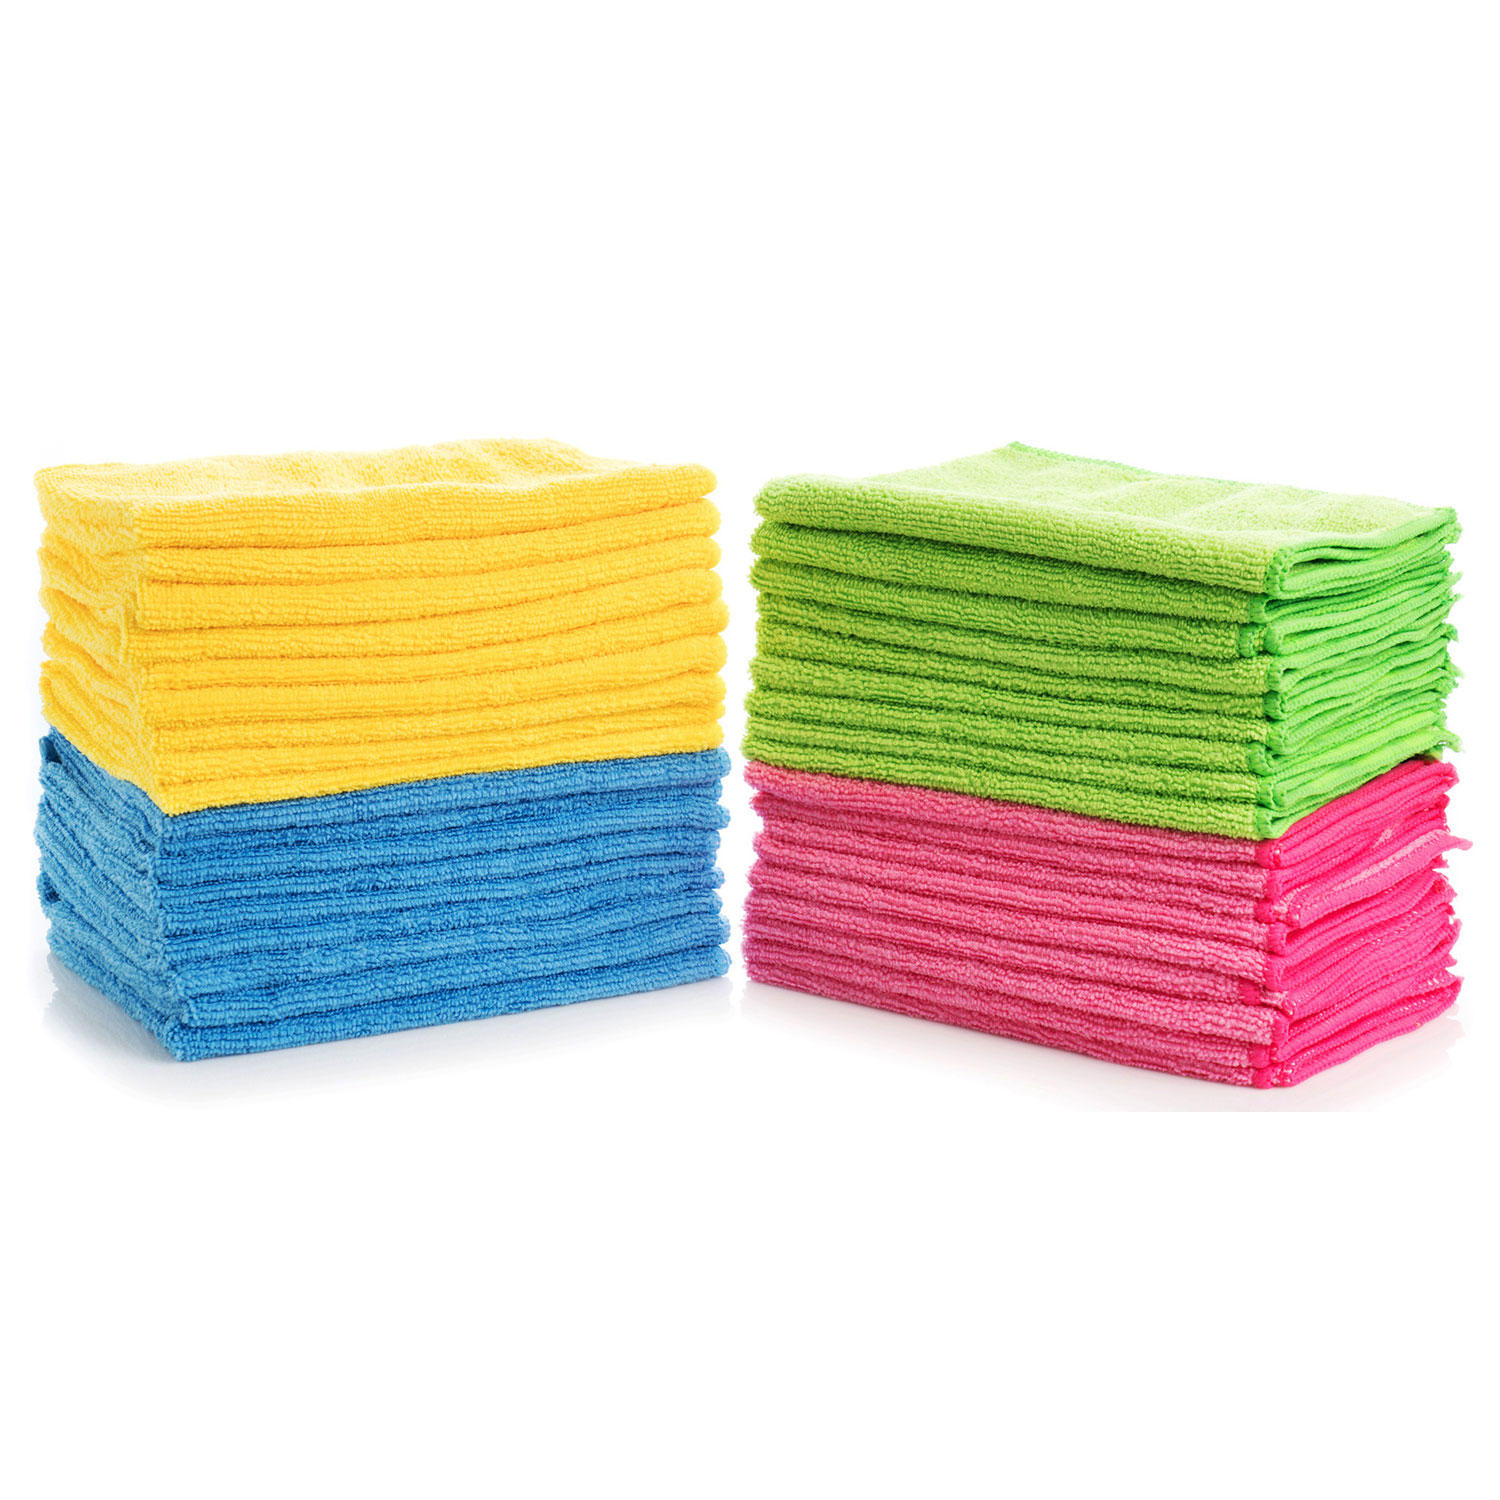 Hometex Microfiber Towels (96 ct, 4 colors)